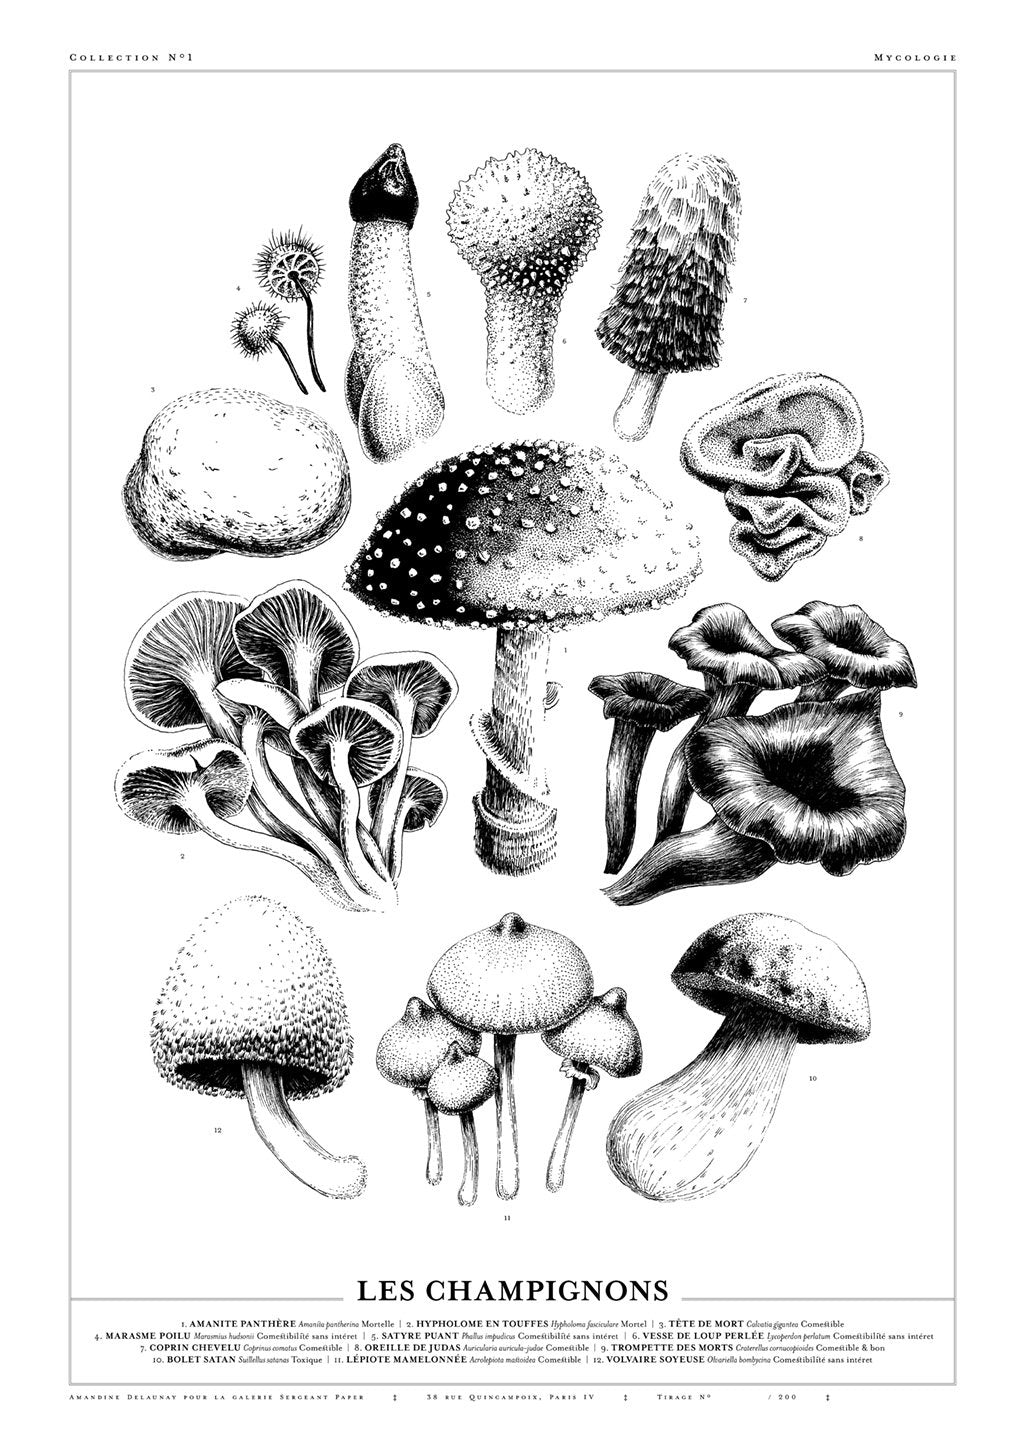 The mushrooms